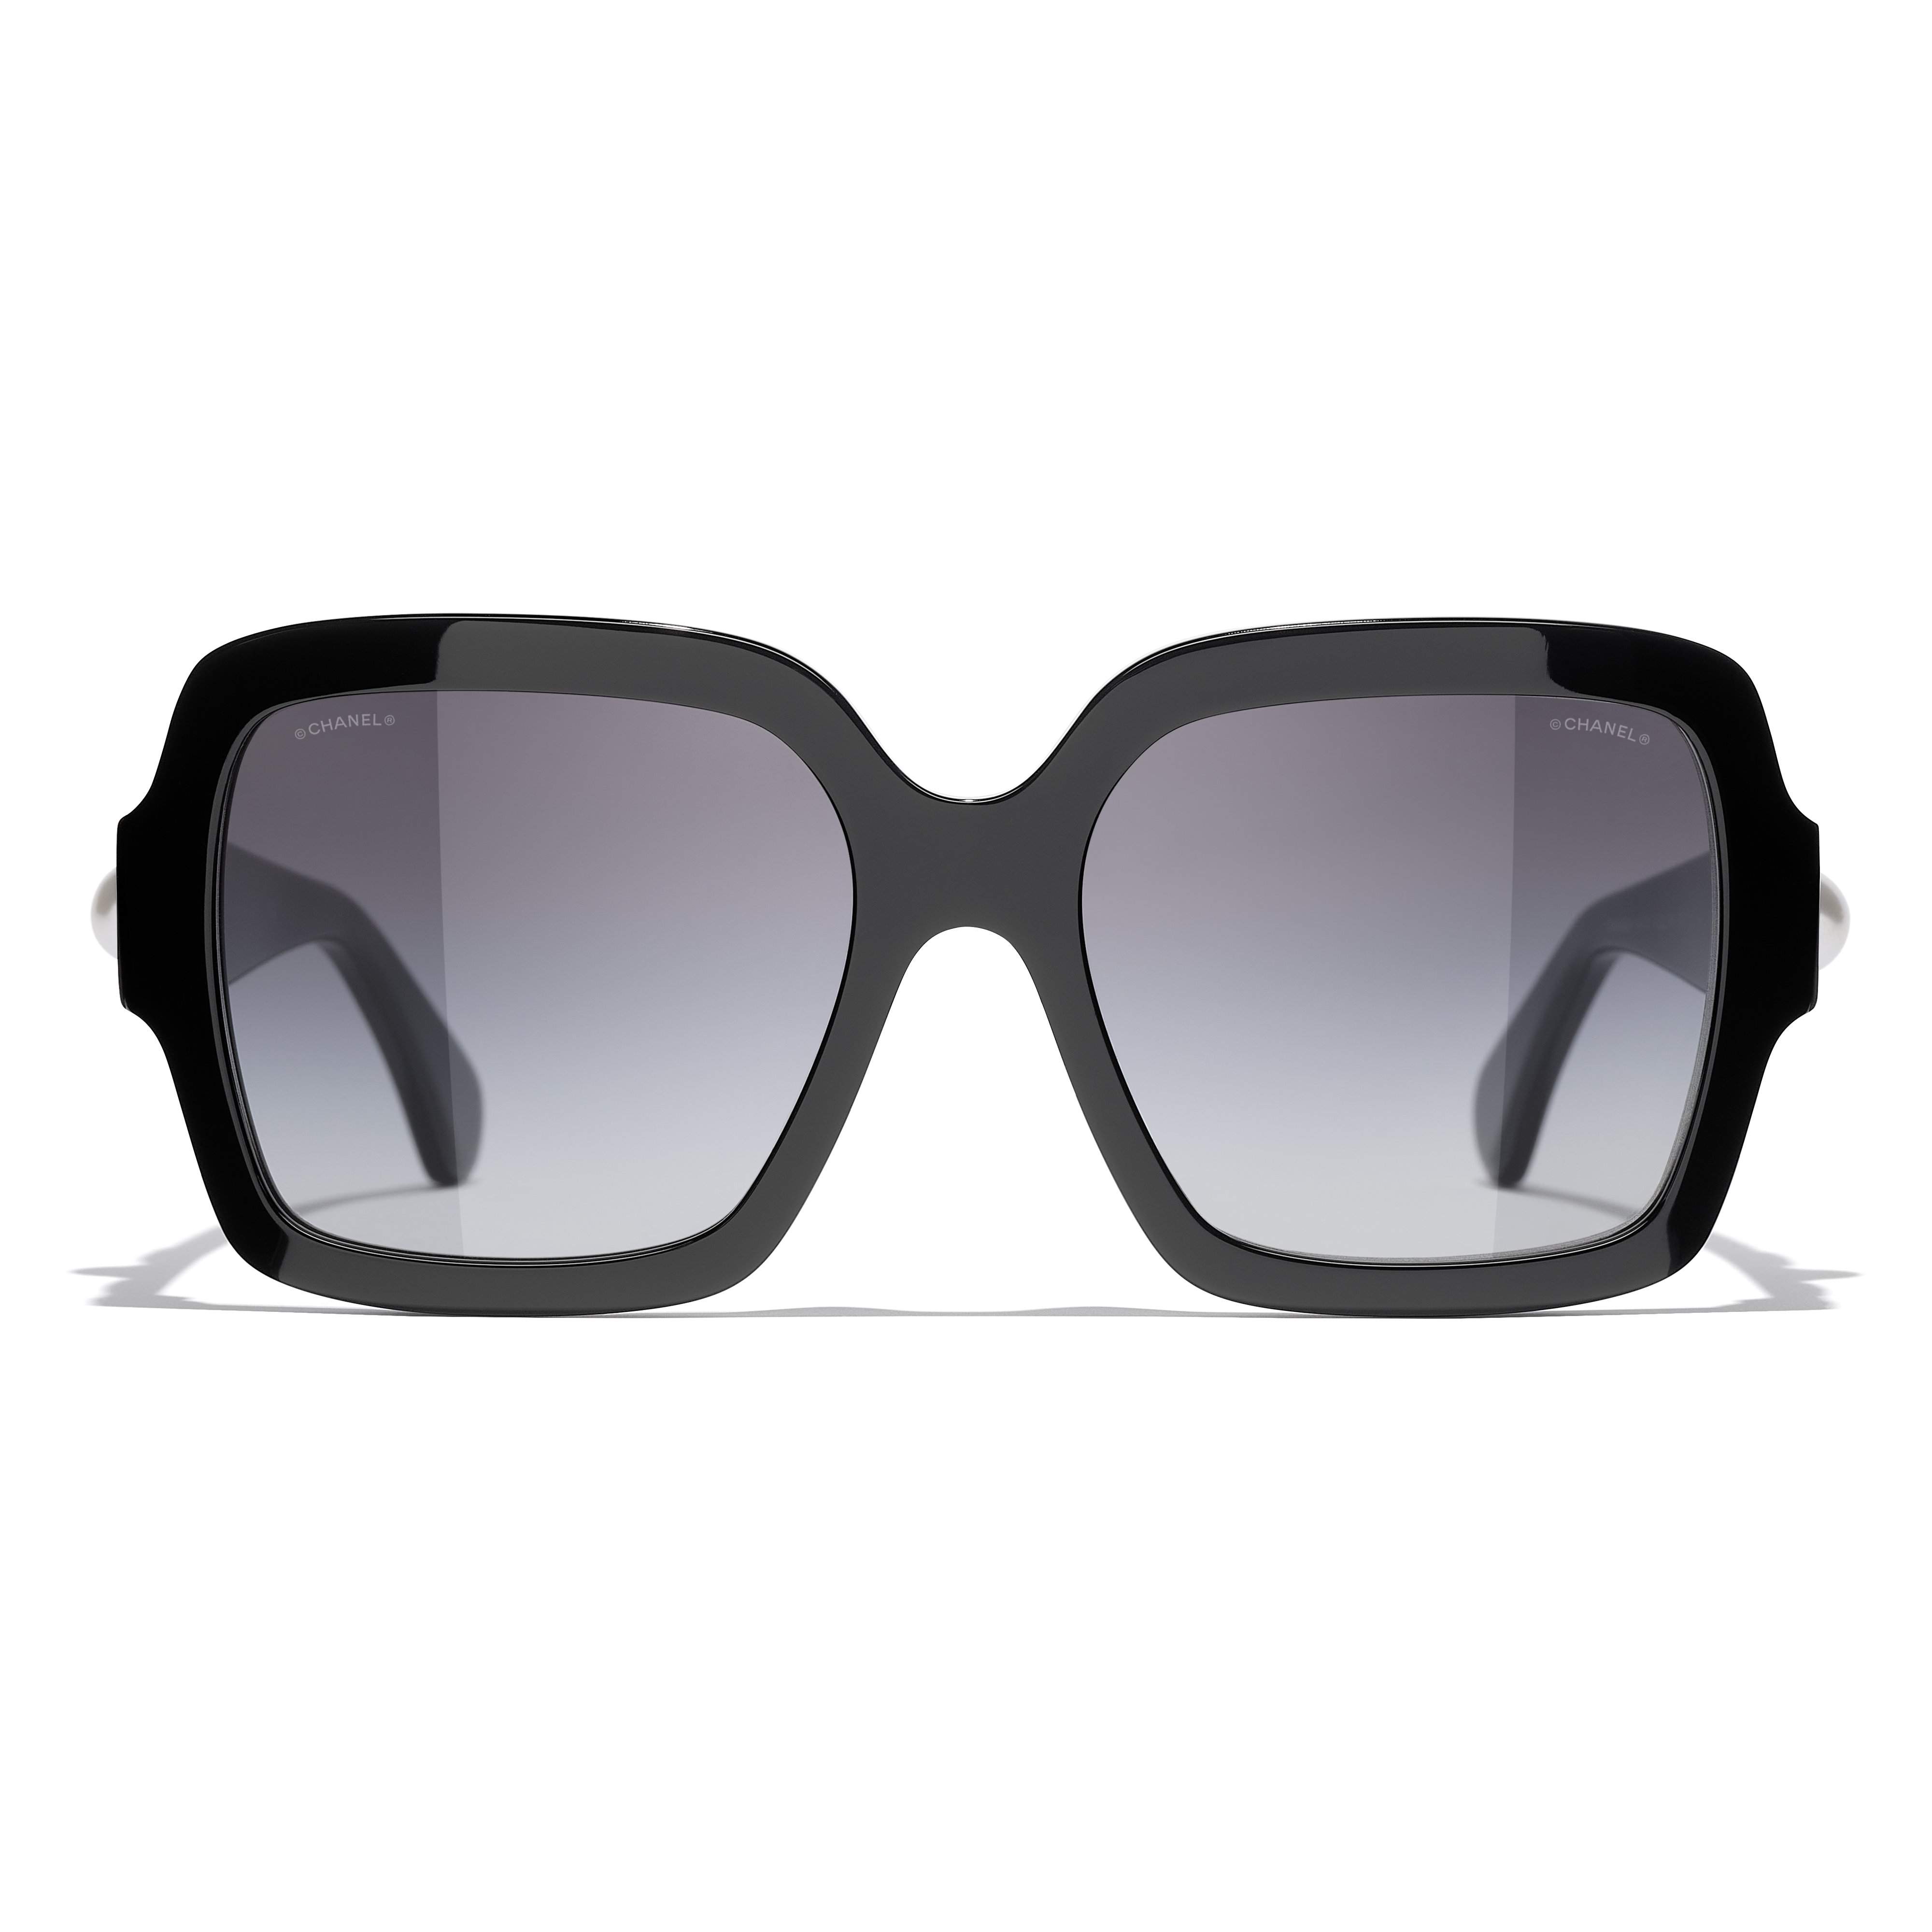 chanel sunglasses frames for women